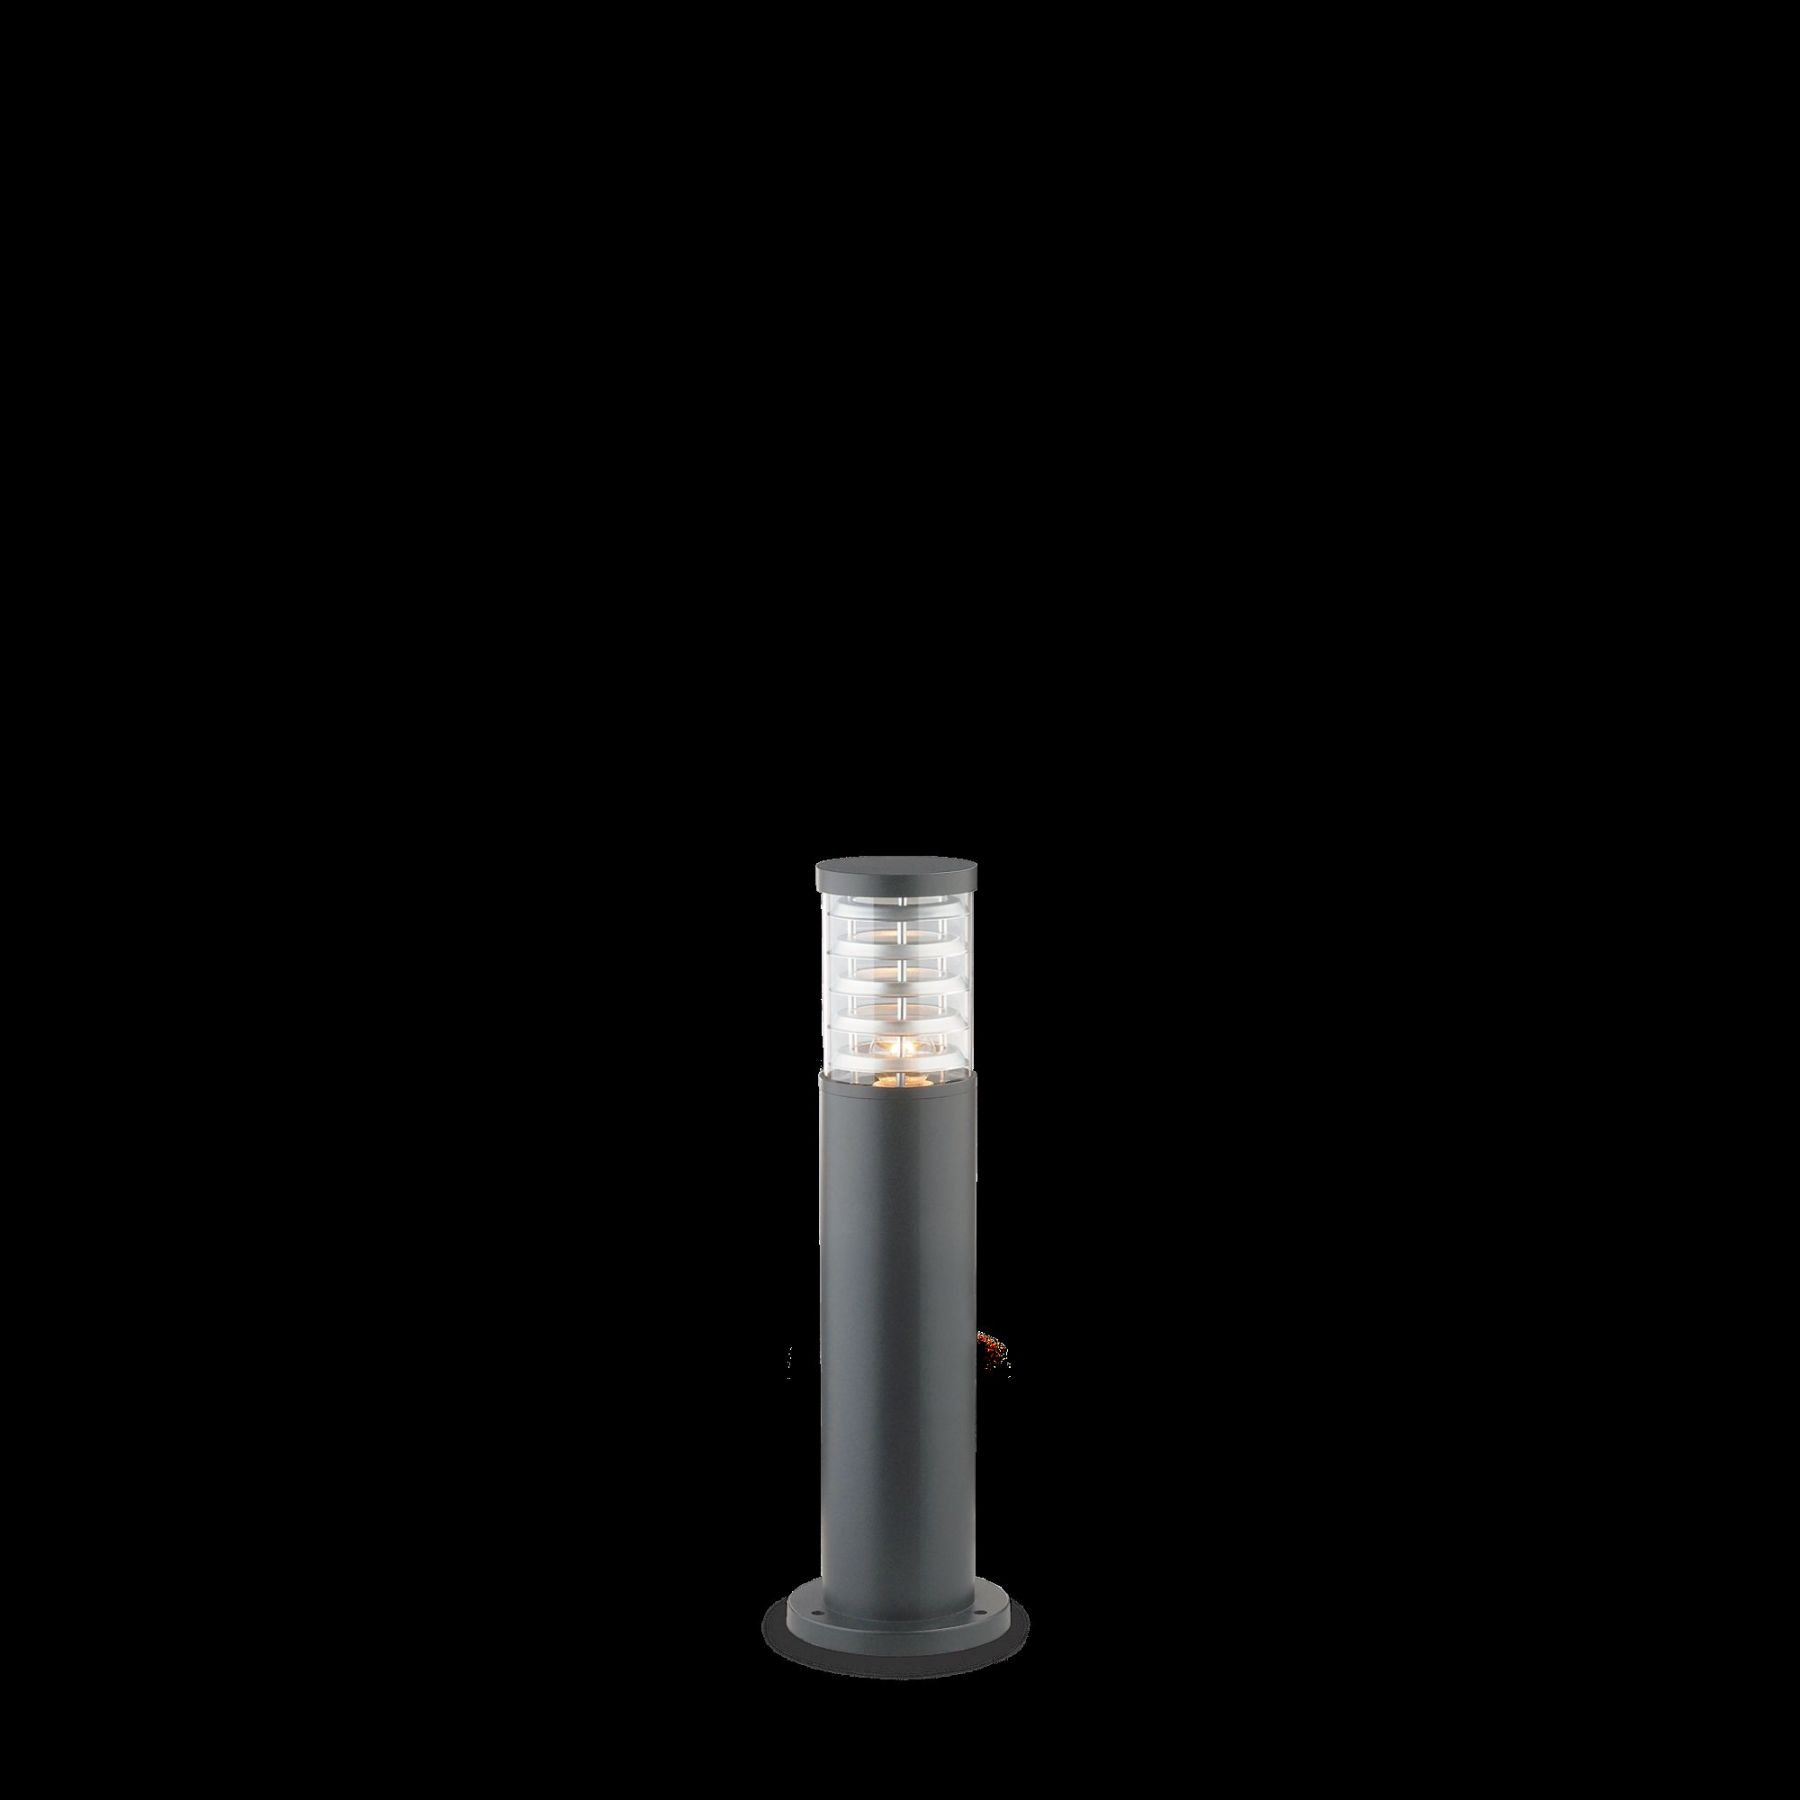 Ideal Lux 248257 venkovní sloupkové svítidlo Tronco 1x60W | E27 | IP54 - antracit - Dekolamp s.r.o.